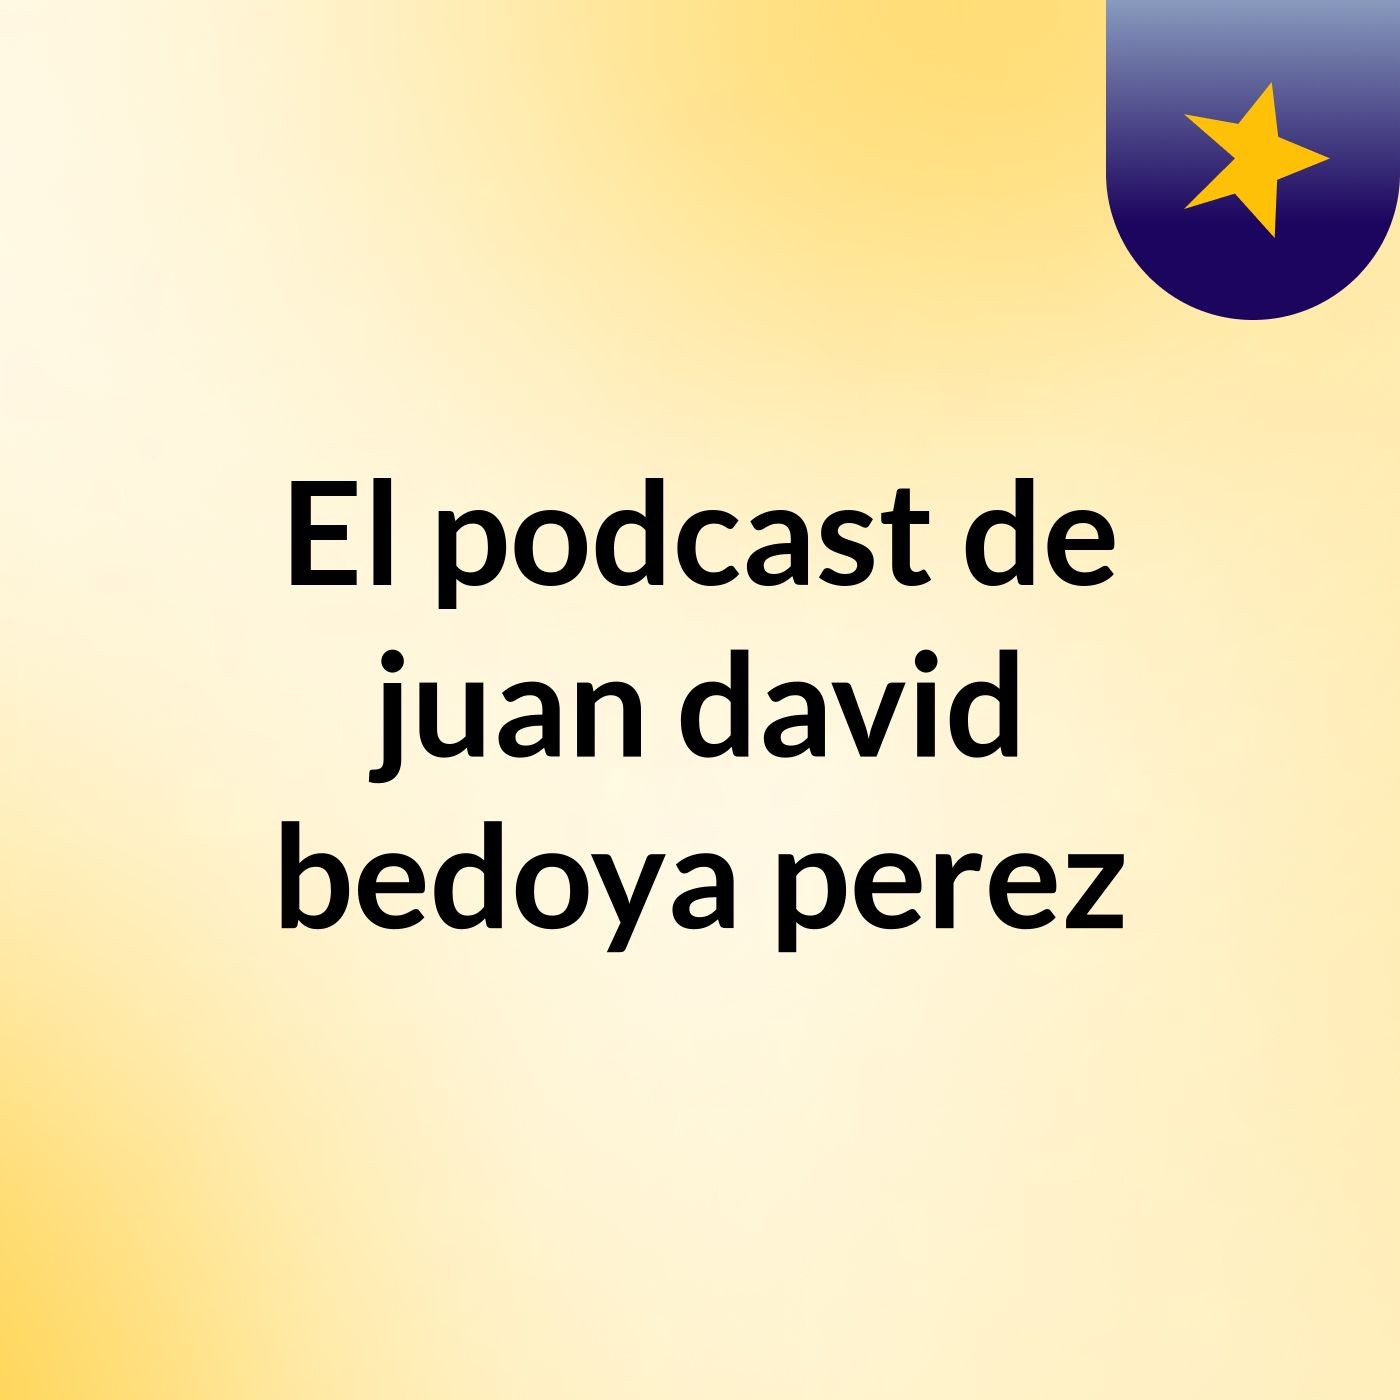 El podcast de juan david bedoya perez